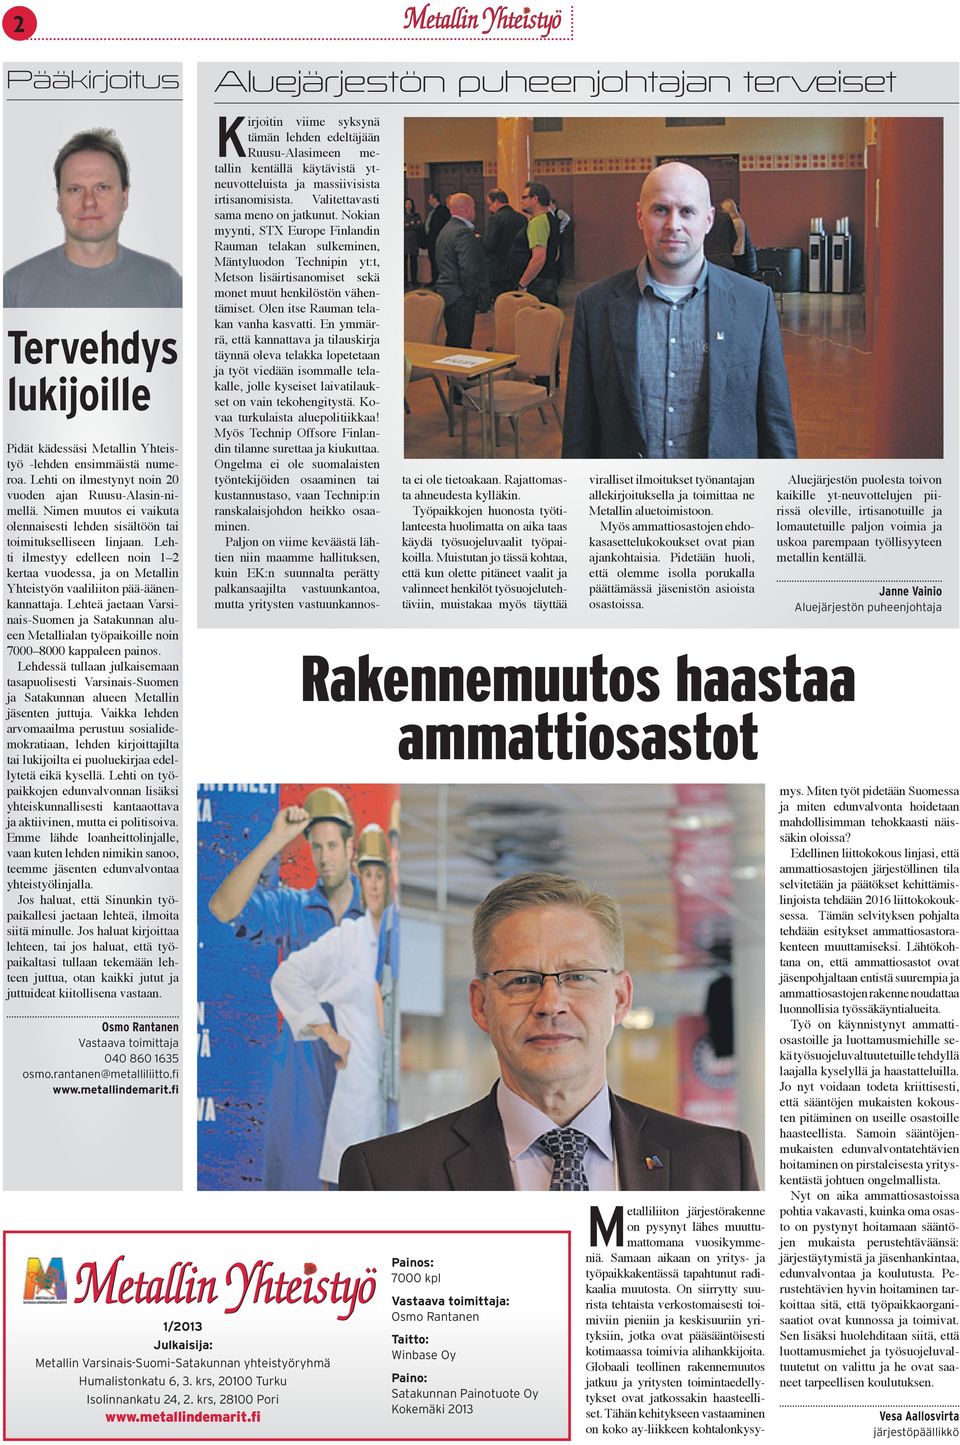 Lehteä jaetaan Varsinais-Suomen ja Satakunnan alueen Metallialan työpaikoille noin 7000 8000 kappaleen painos.